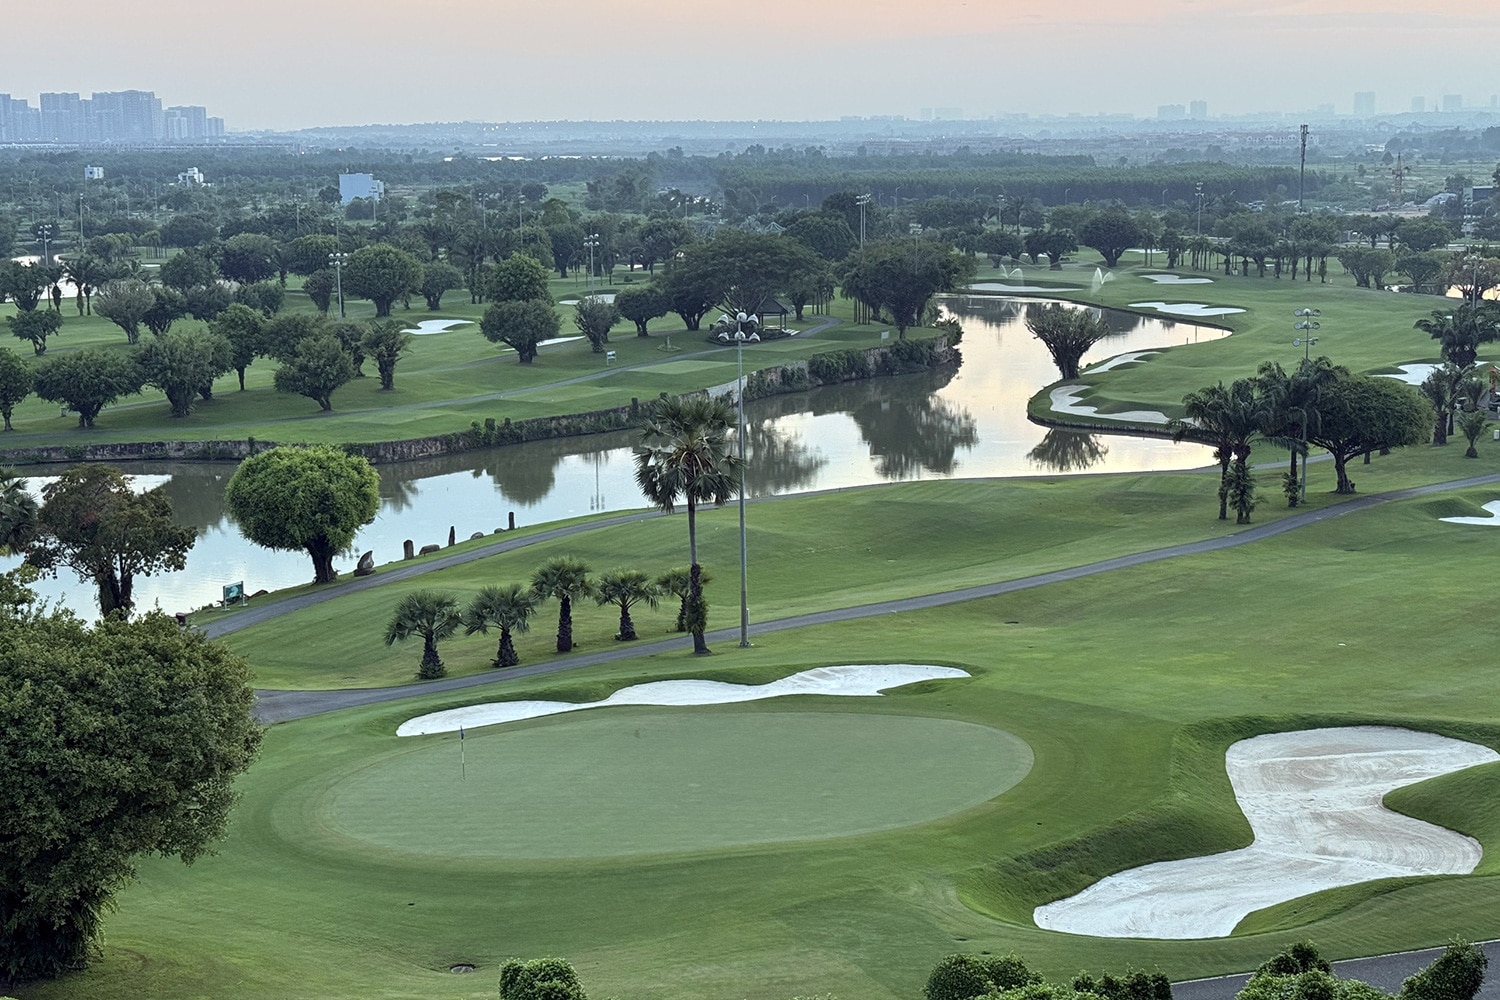 Sân golf Long Thành - một trong ba sân golf hiện hữu ở Đồng Nai thu hút du khách trong và ngoài tỉnh, chuyên gia nước ngoài đến chơi thể thao, nghỉ dưỡng - Ảnh: AN BÌNH